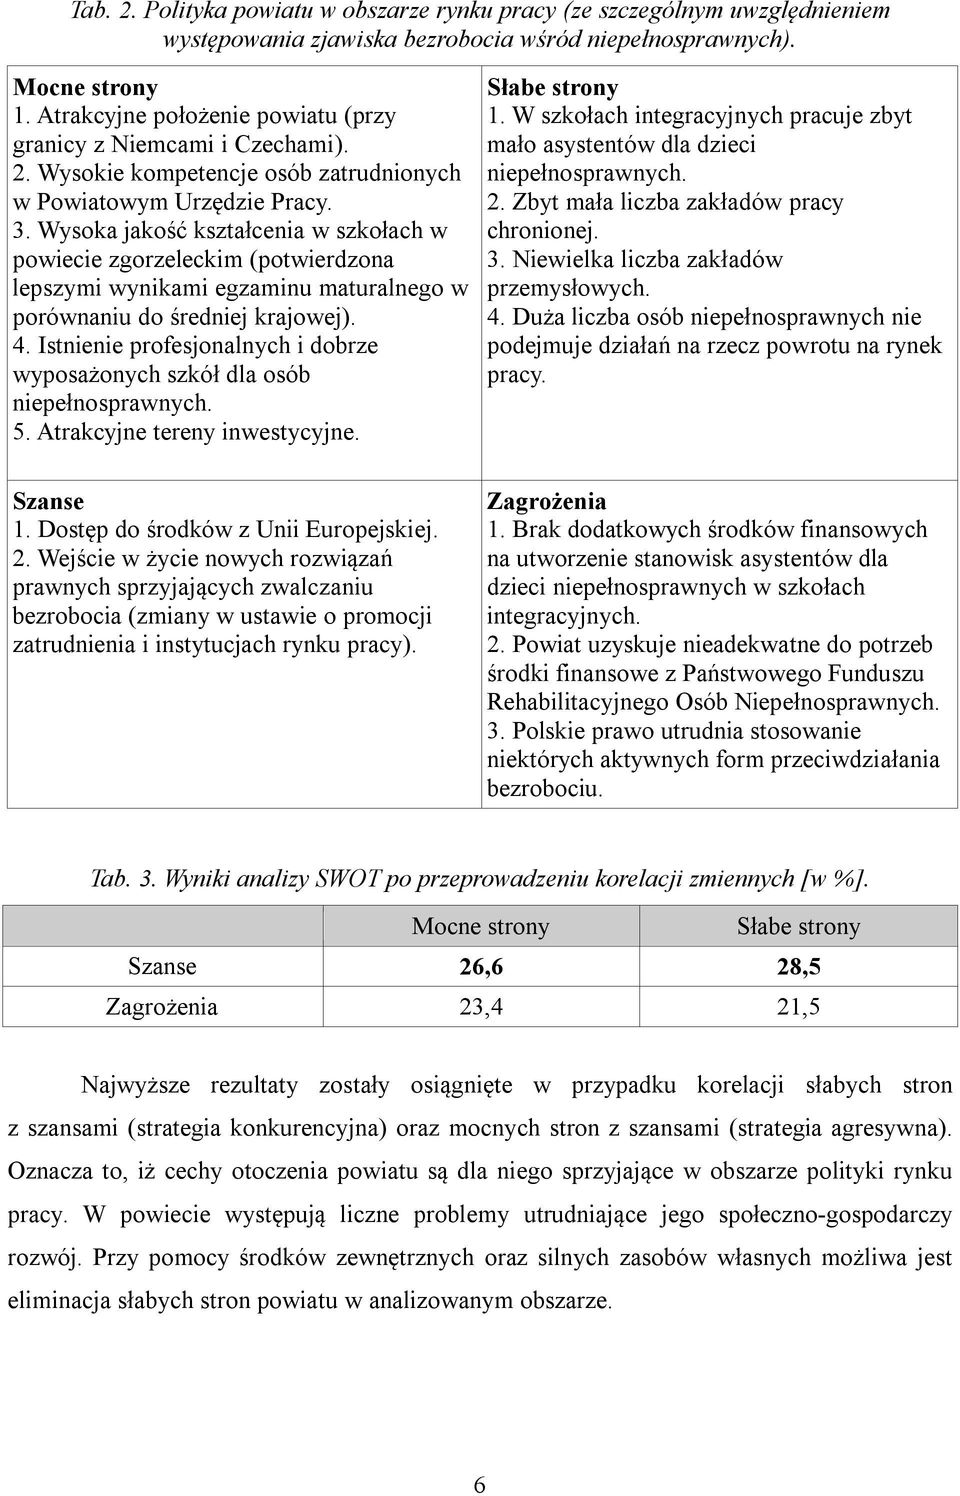 Wysoka jakość kształcenia w szkołach w powiecie zgorzeleckim (potwierdzona lepszymi wynikami egzaminu maturalnego w porównaniu do średniej krajowej). 4.